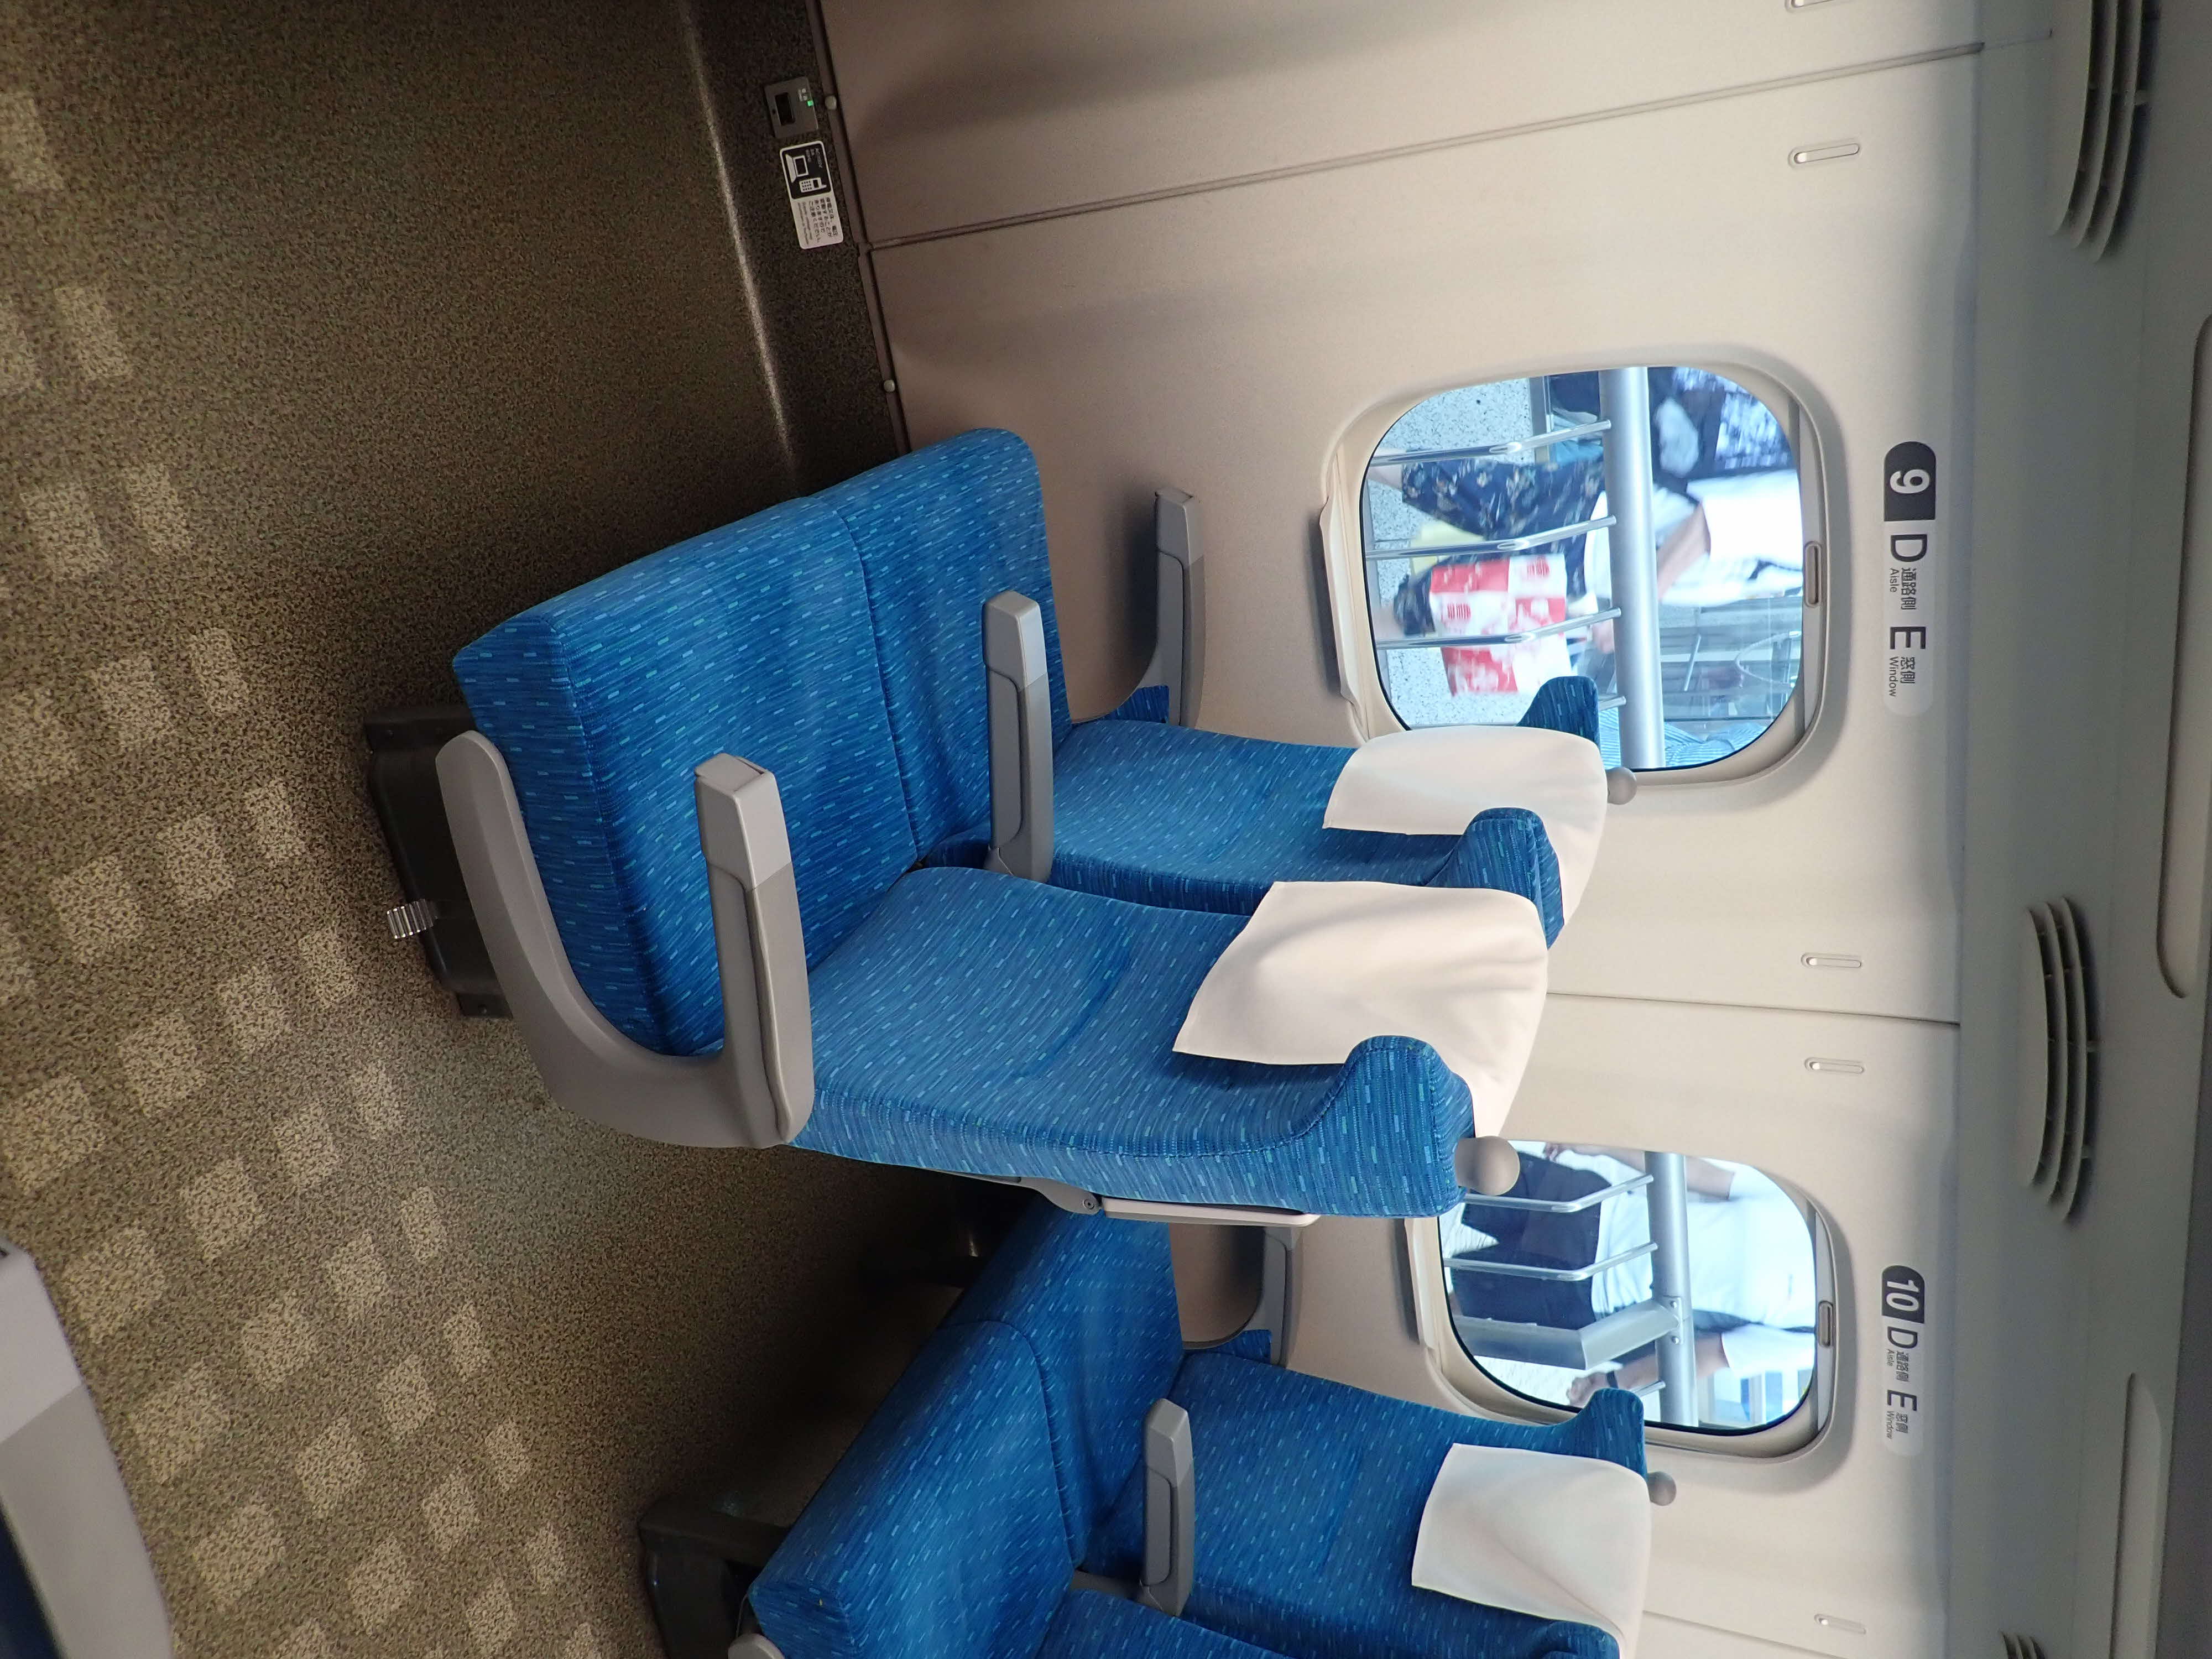 JR 東海道・山陽新幹線 N700系 グリーン車 シート座席 左L クッション 